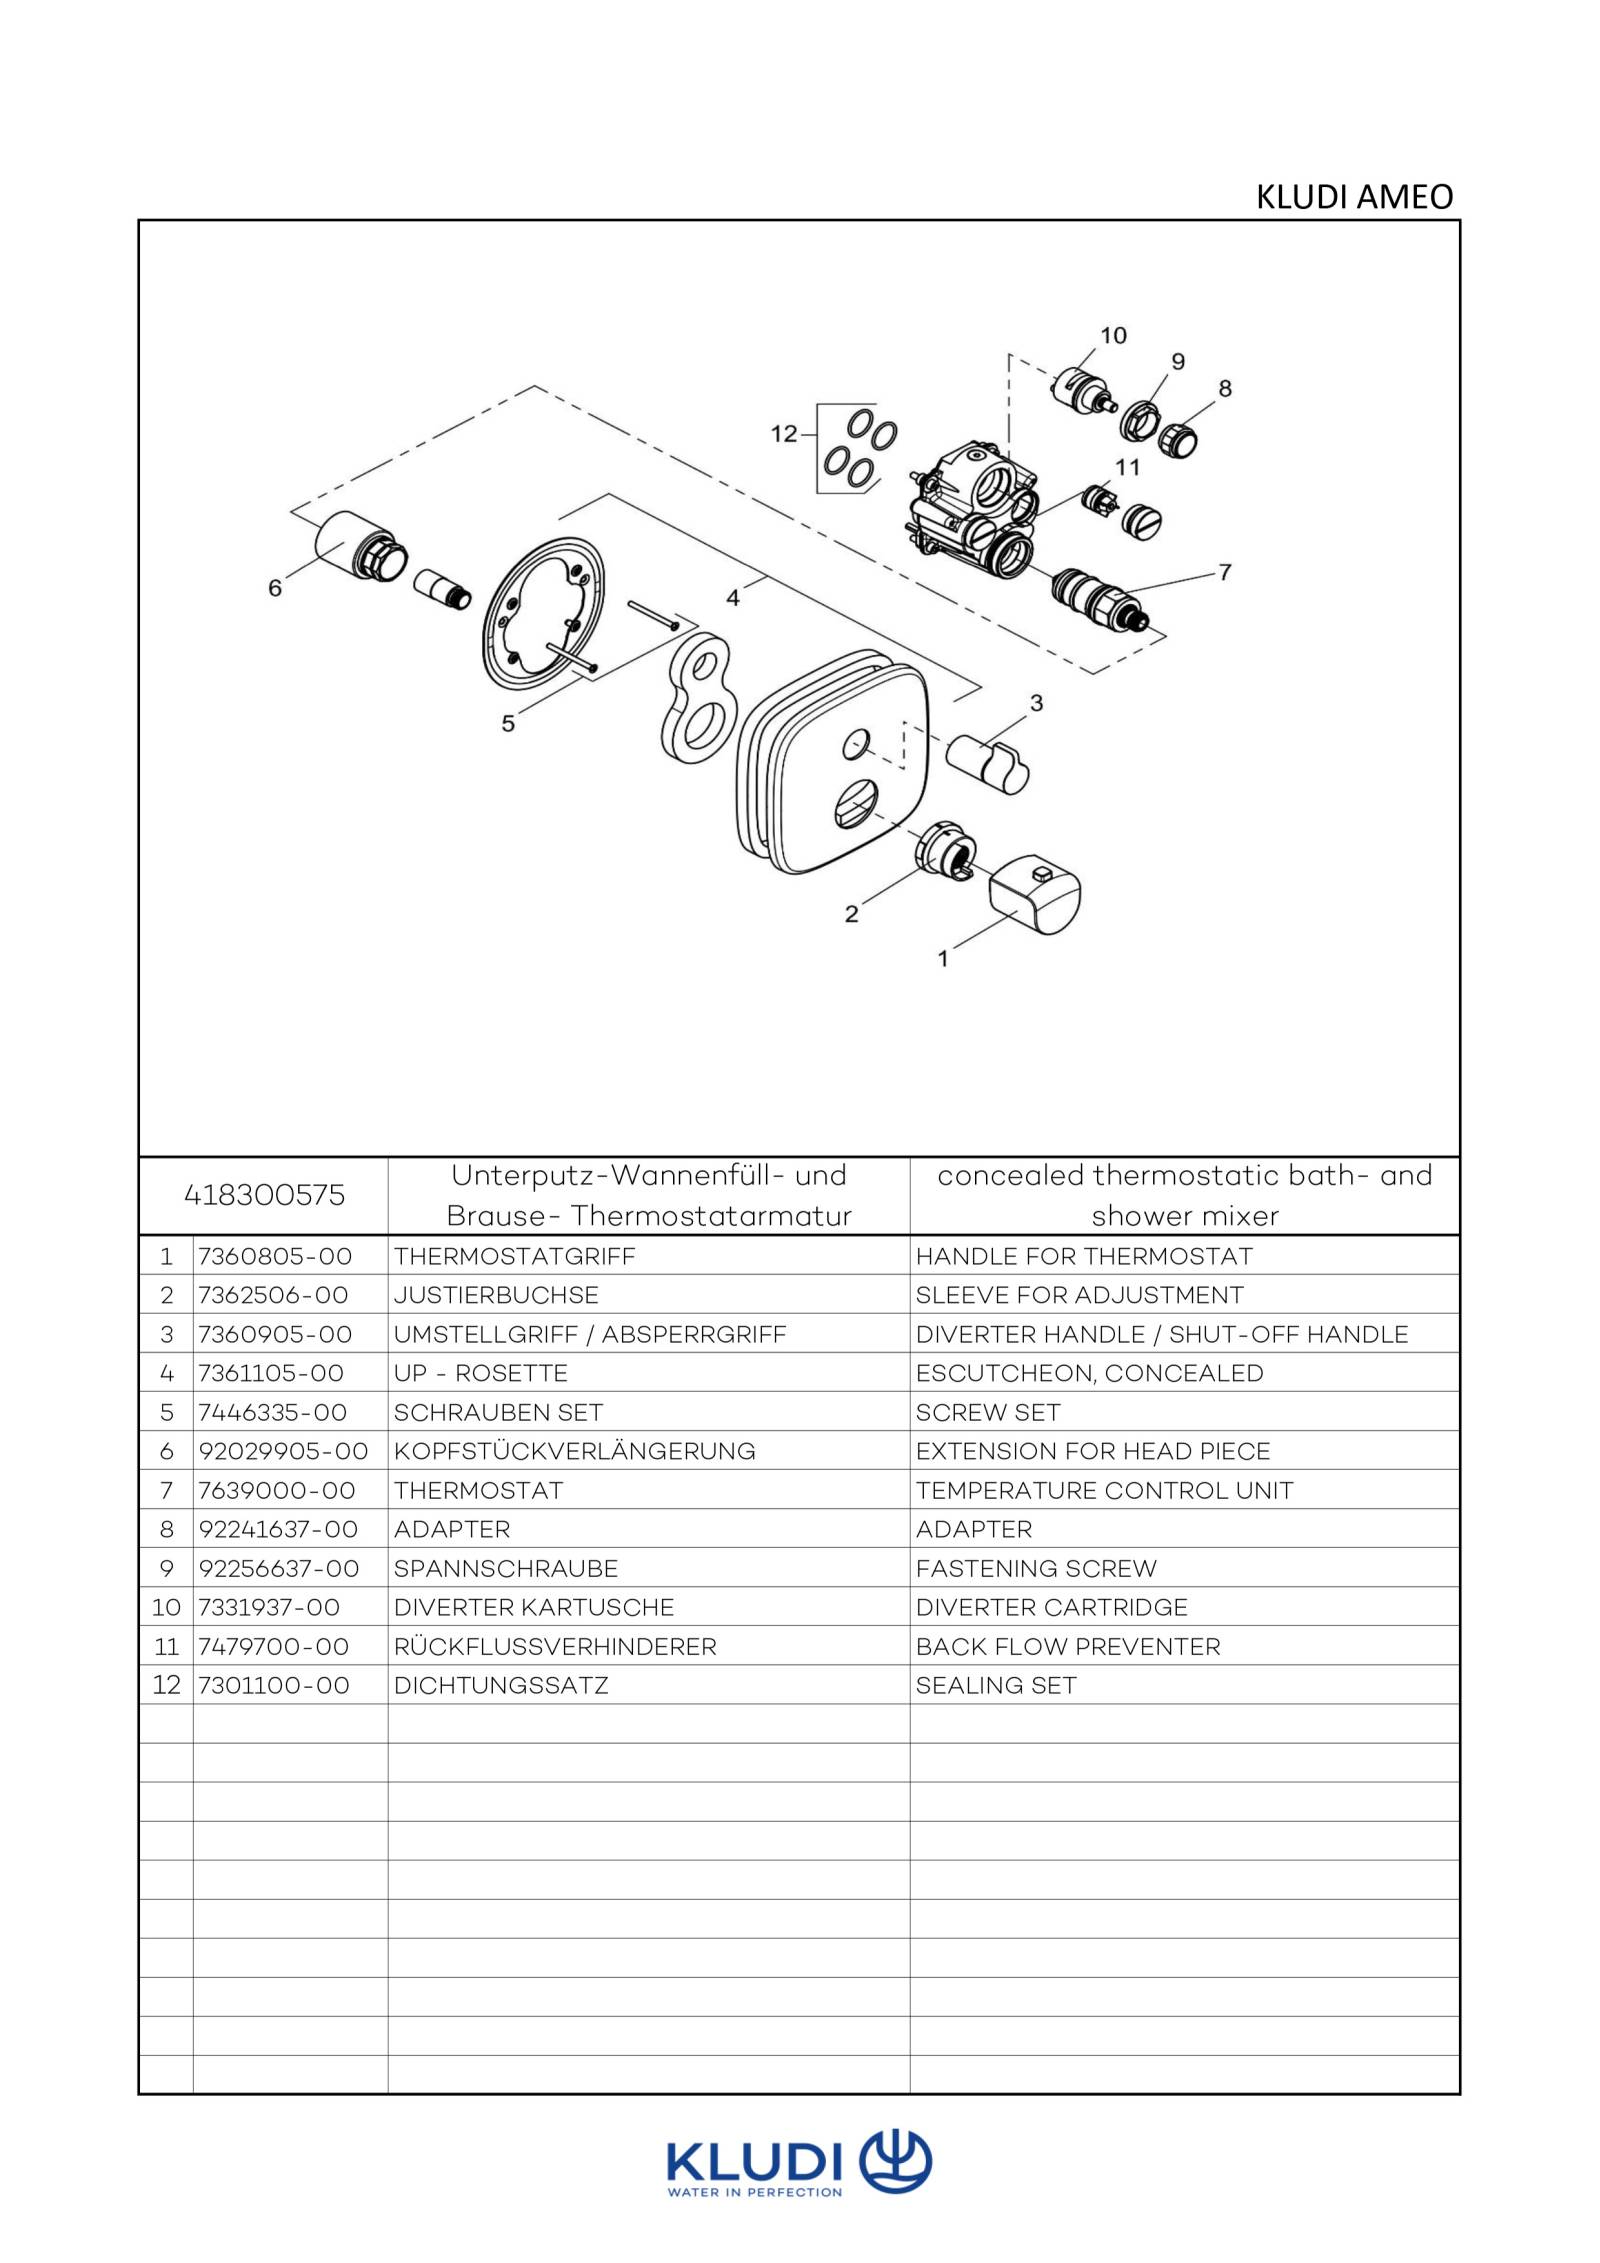 KLUDI AMEO Unterputz-Thermostatarmatur Feinbau-Set m.Absperr- und Umstellventil